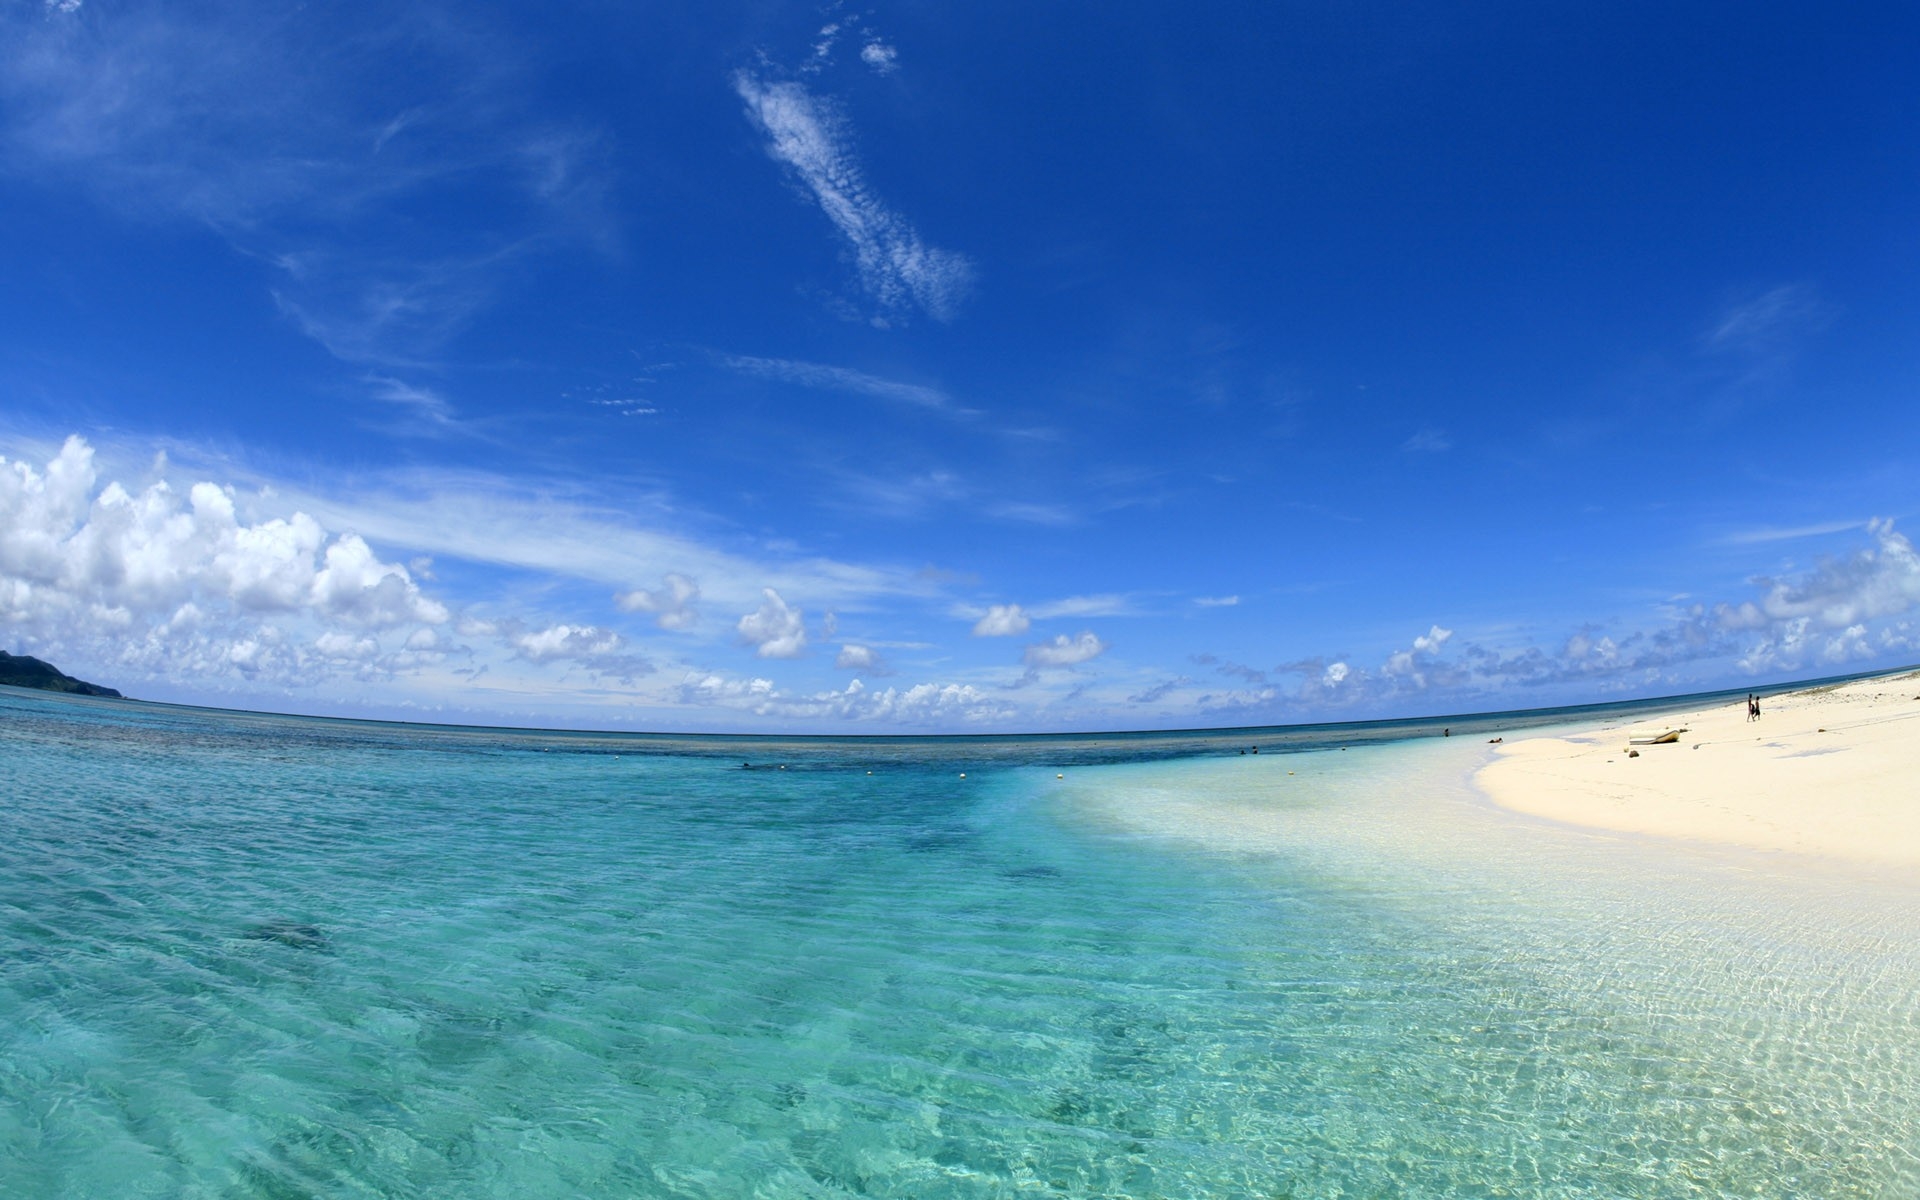 Картинки пляж, песок, залив, голубая вода, горизонт фото и обои на рабочий стол